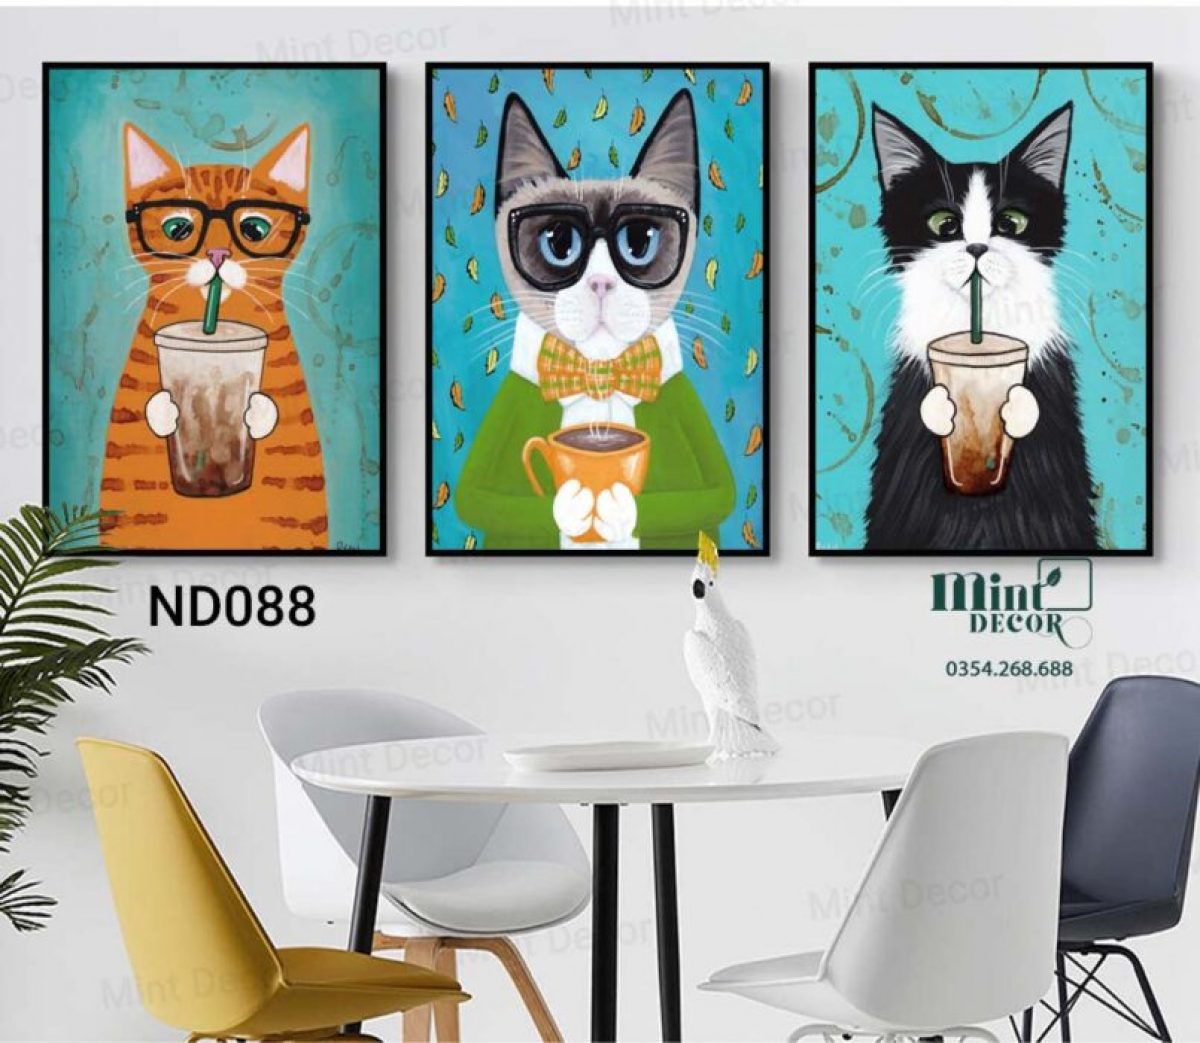 Bộ 3 Tranh Mèo Uống Trà Sữa - Tranh treo: Bạn là một tín đồ yêu nghệ thuật và muốn tìm một bộ tranh độc đáo để trang trí ngôi nhà của bạn? Hãy quan tâm đến bộ 3 tranh mèo uống trà sữa đáng yêu này. Với hình ảnh những chú mèo uống trà sữa tuyệt đẹp, tranh sẽ là điểm nhấn cho không gian nội thất của bạn. Bạn chắc chắn sẽ cảm thấy vui vẻ và sáng tạo với bộ tranh mèo uống trà sữa này.